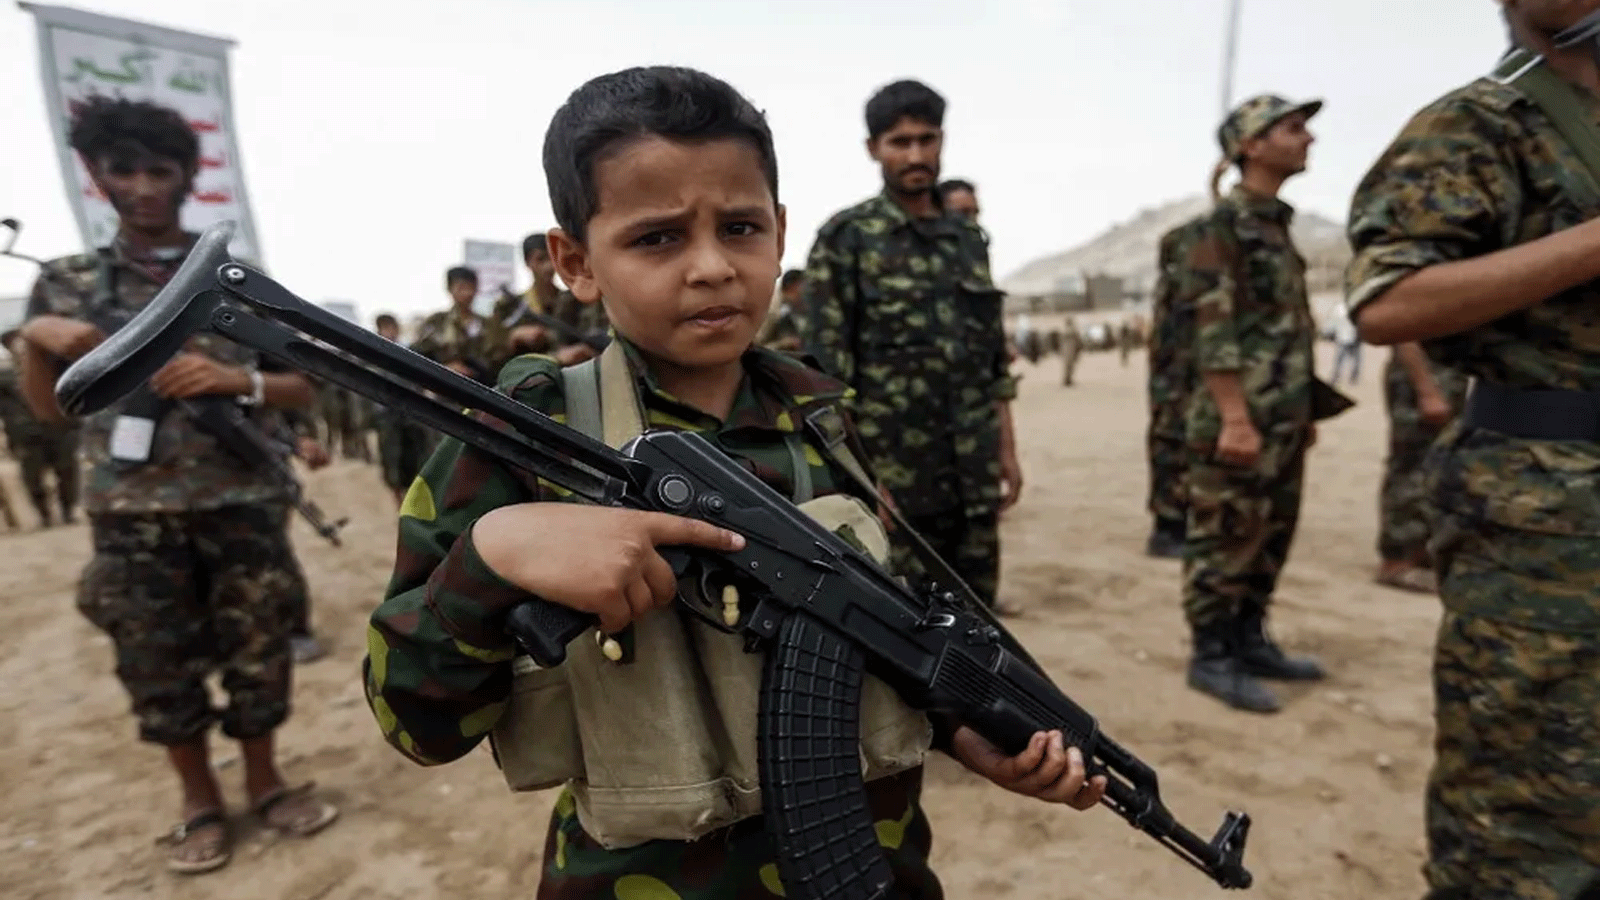 طفلٌ يمني يقف حاملاً بندقية كلاشنيكوف خلال تجمع لمقاتلين حوثيين جدد في صنعاء، اليمن، في 16 يوليو / تموز 2017.